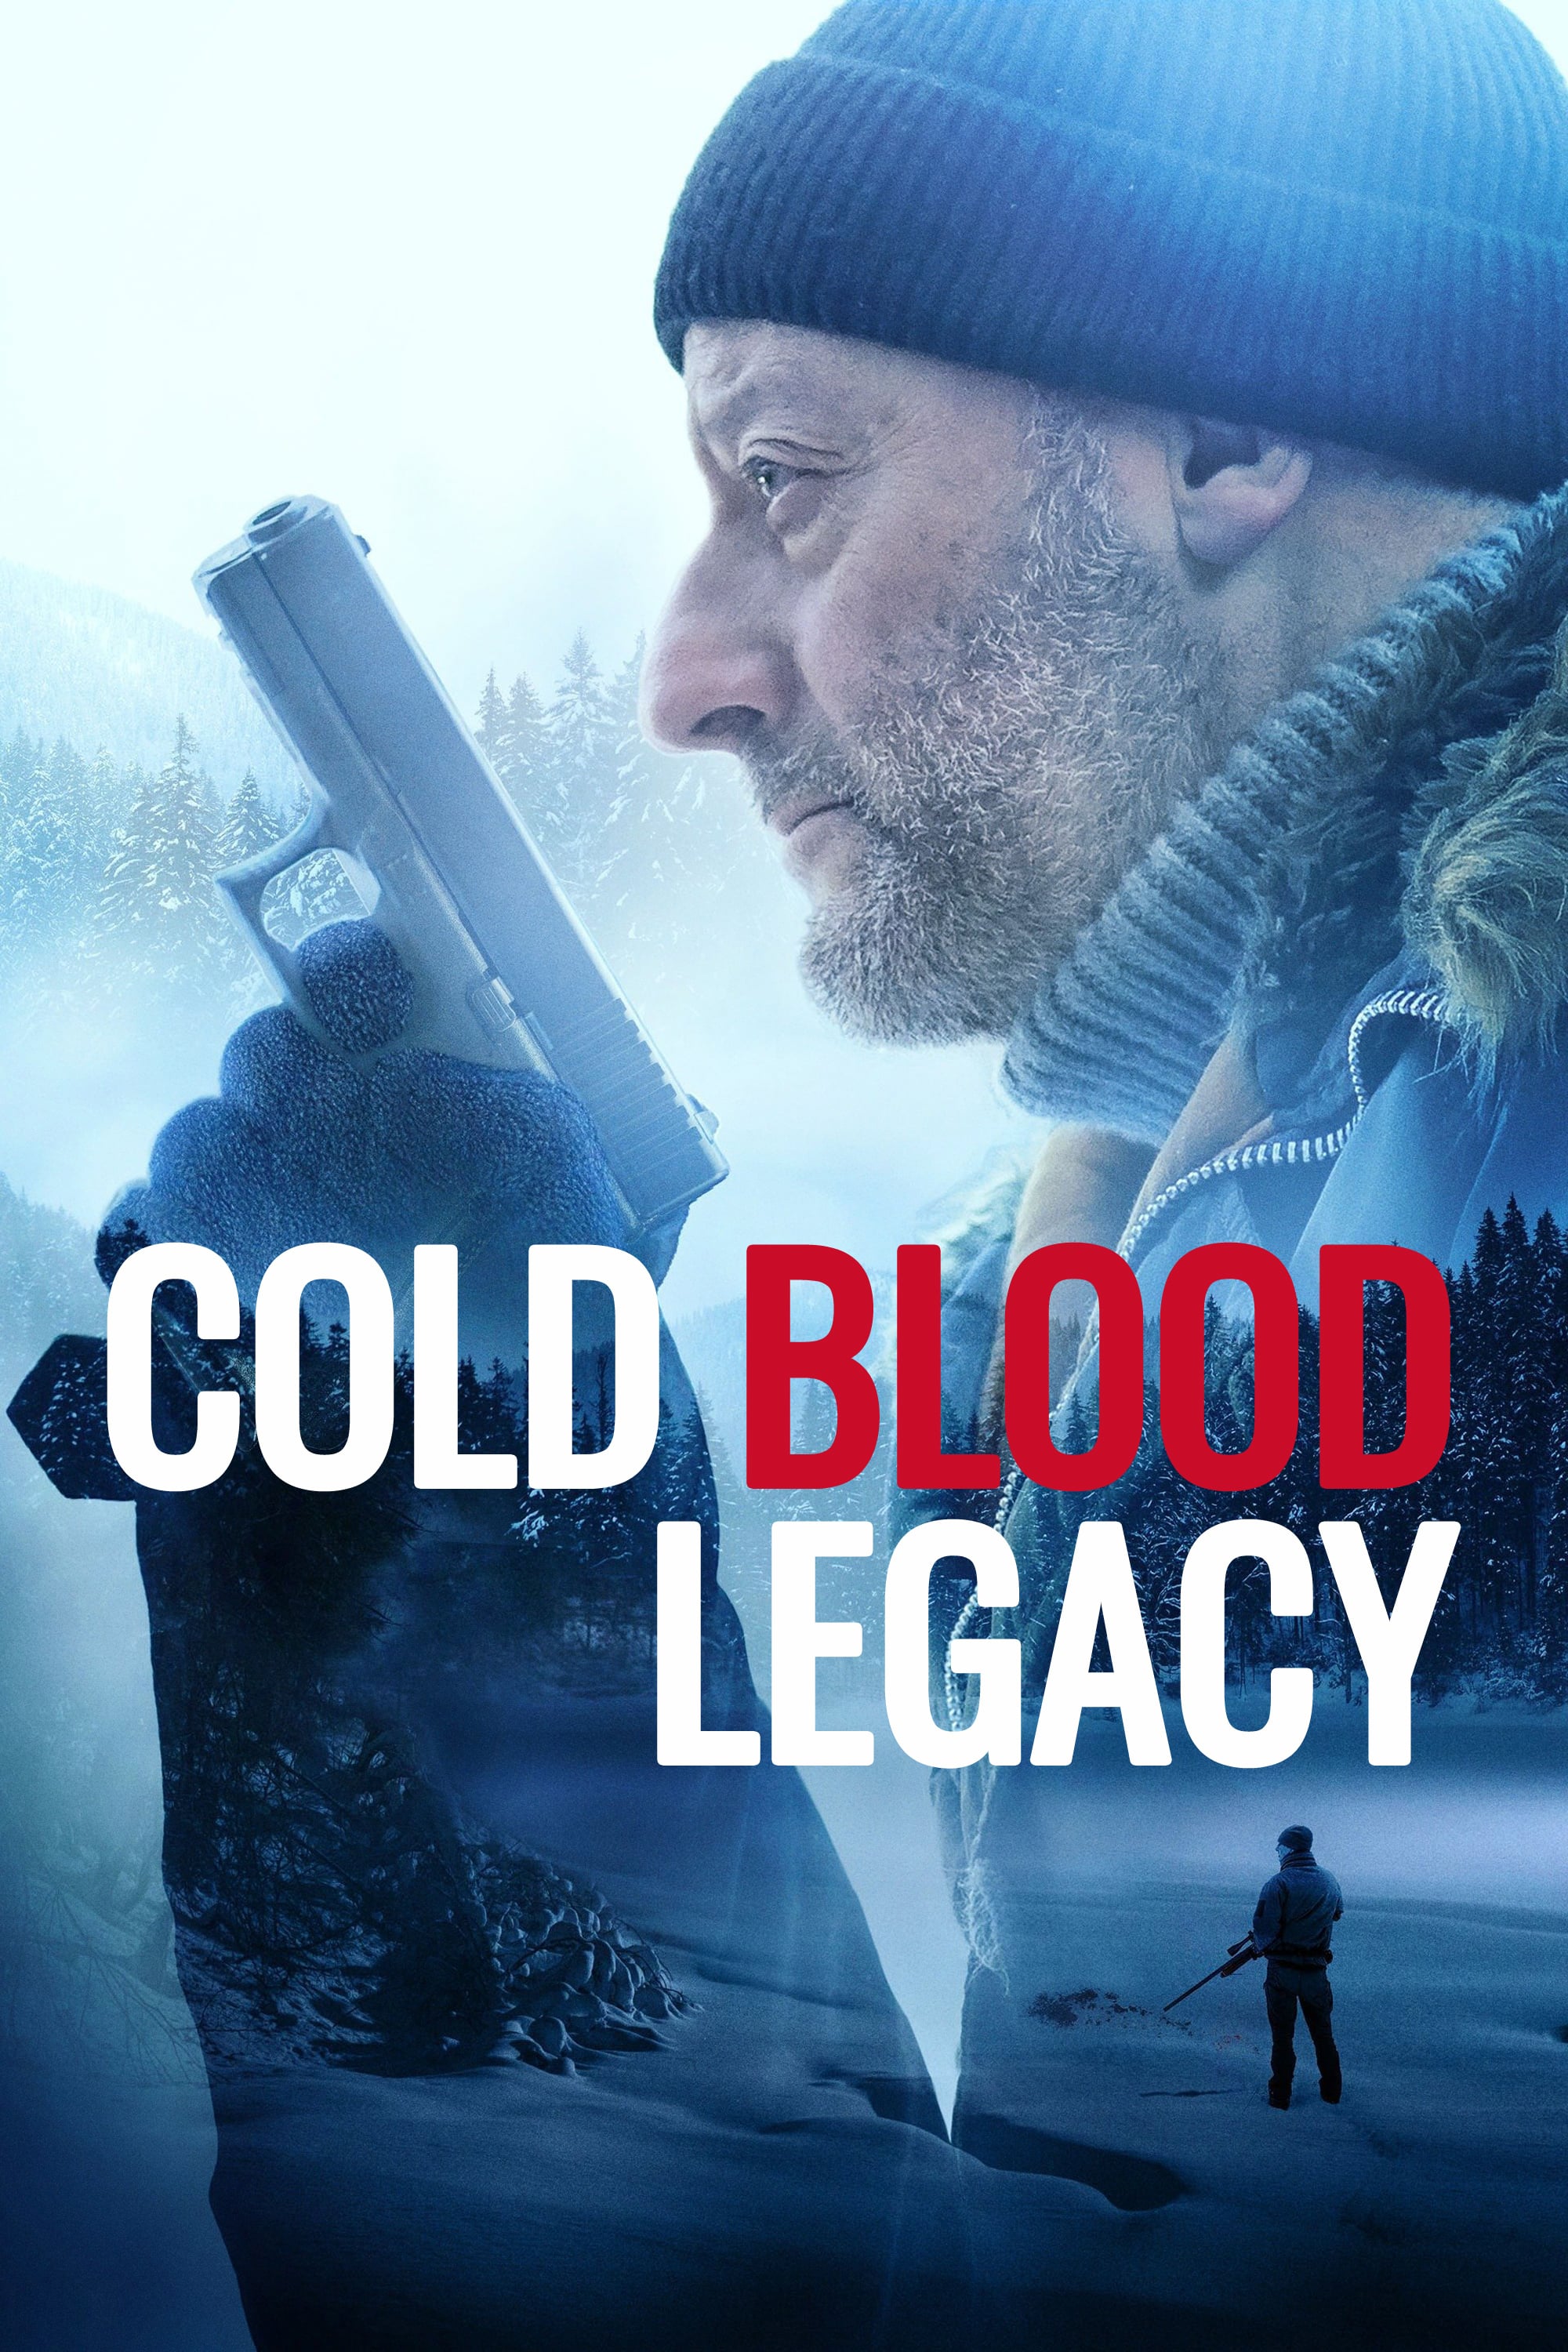 Plakat von "Cold Blood Legacy"